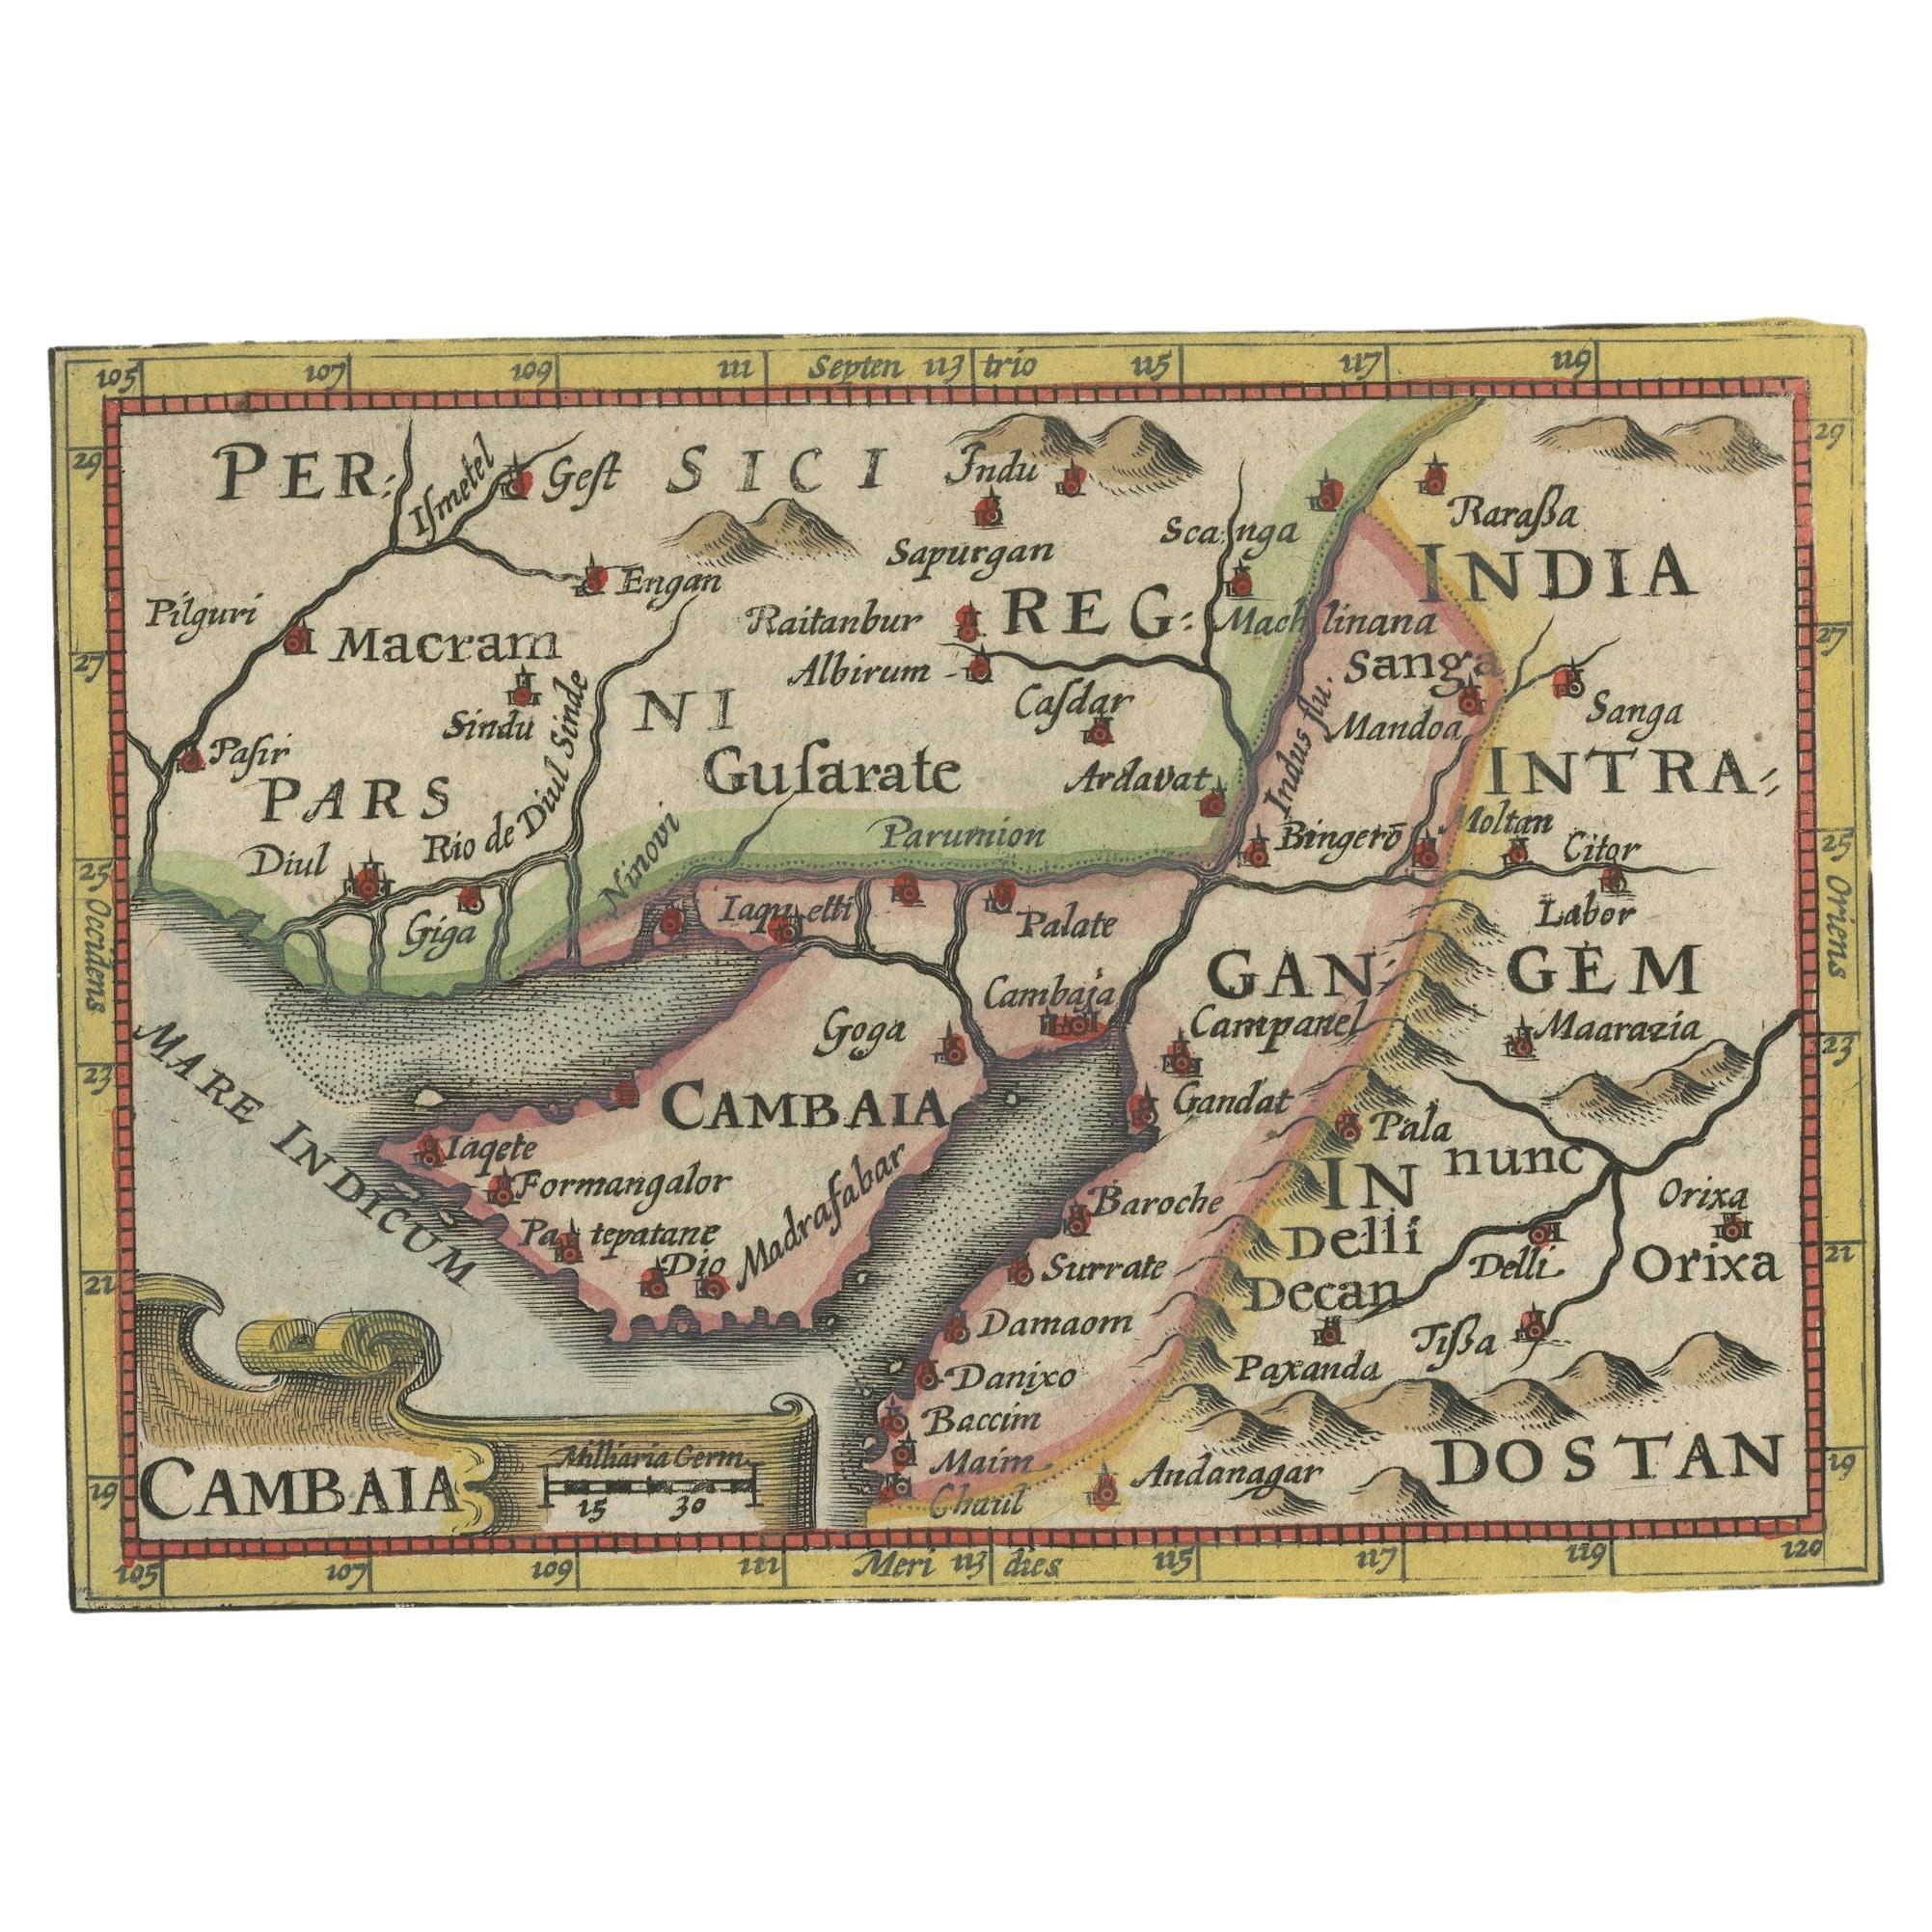 Seltene antike Miniature Karte von Pakistan, Indien und Kambaia, ca.1618